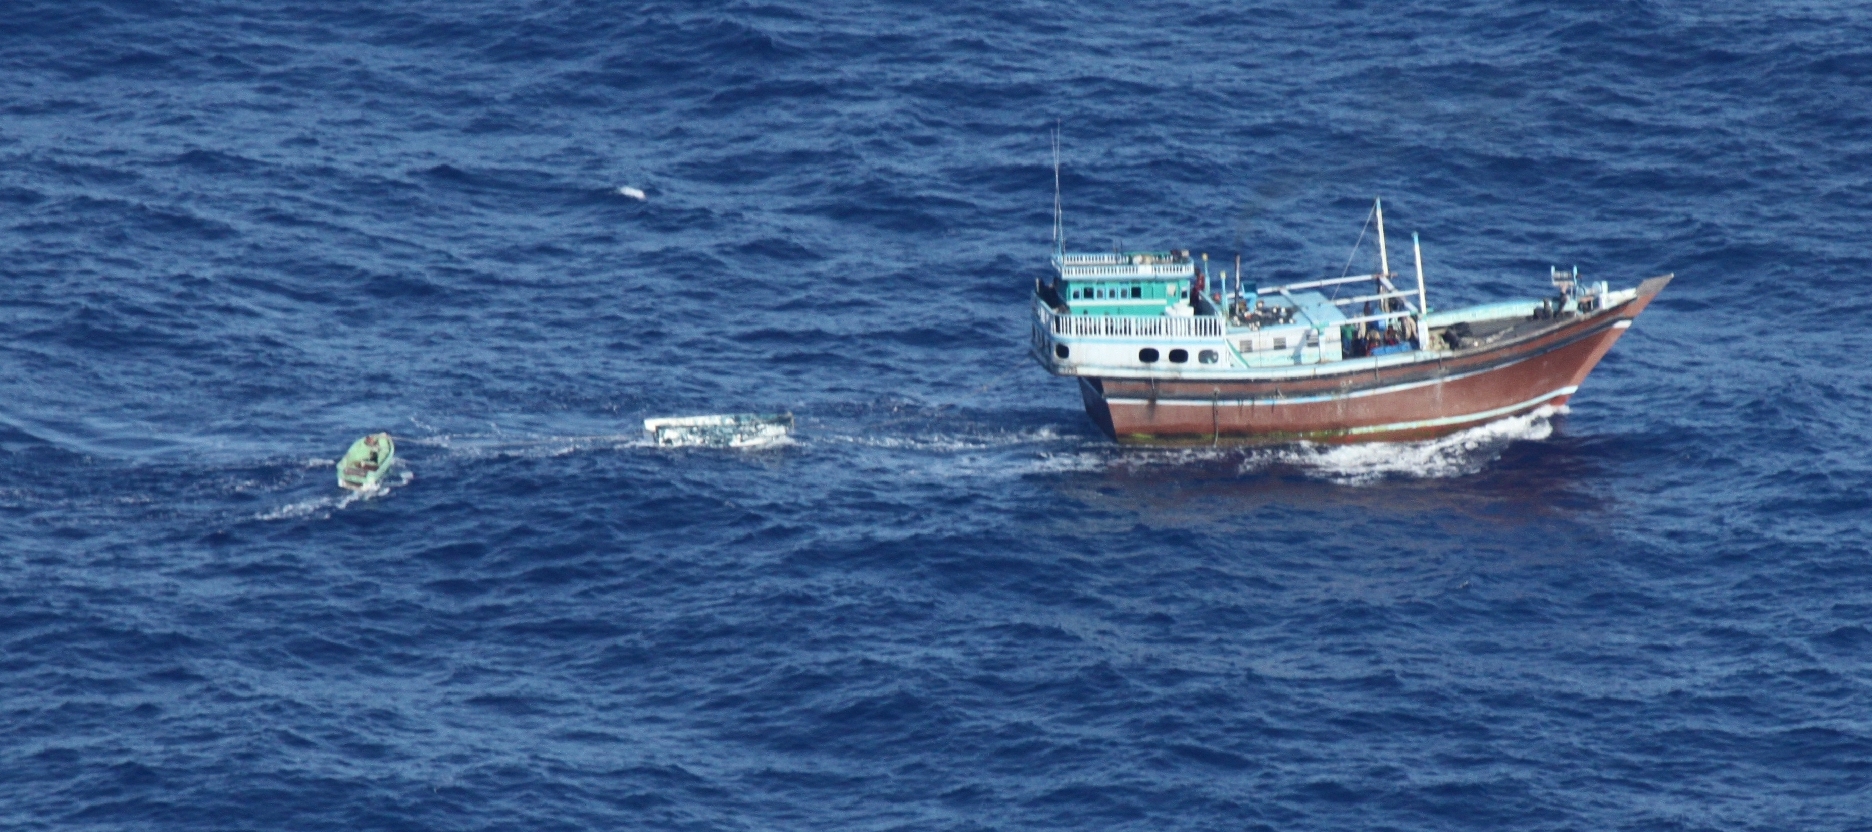 La technique éprouvée des pirates somaliens - bateaux-mères et skiffs - utilisée par les trafiquants en Méditerranée ? (crédit : Eunavfor) 